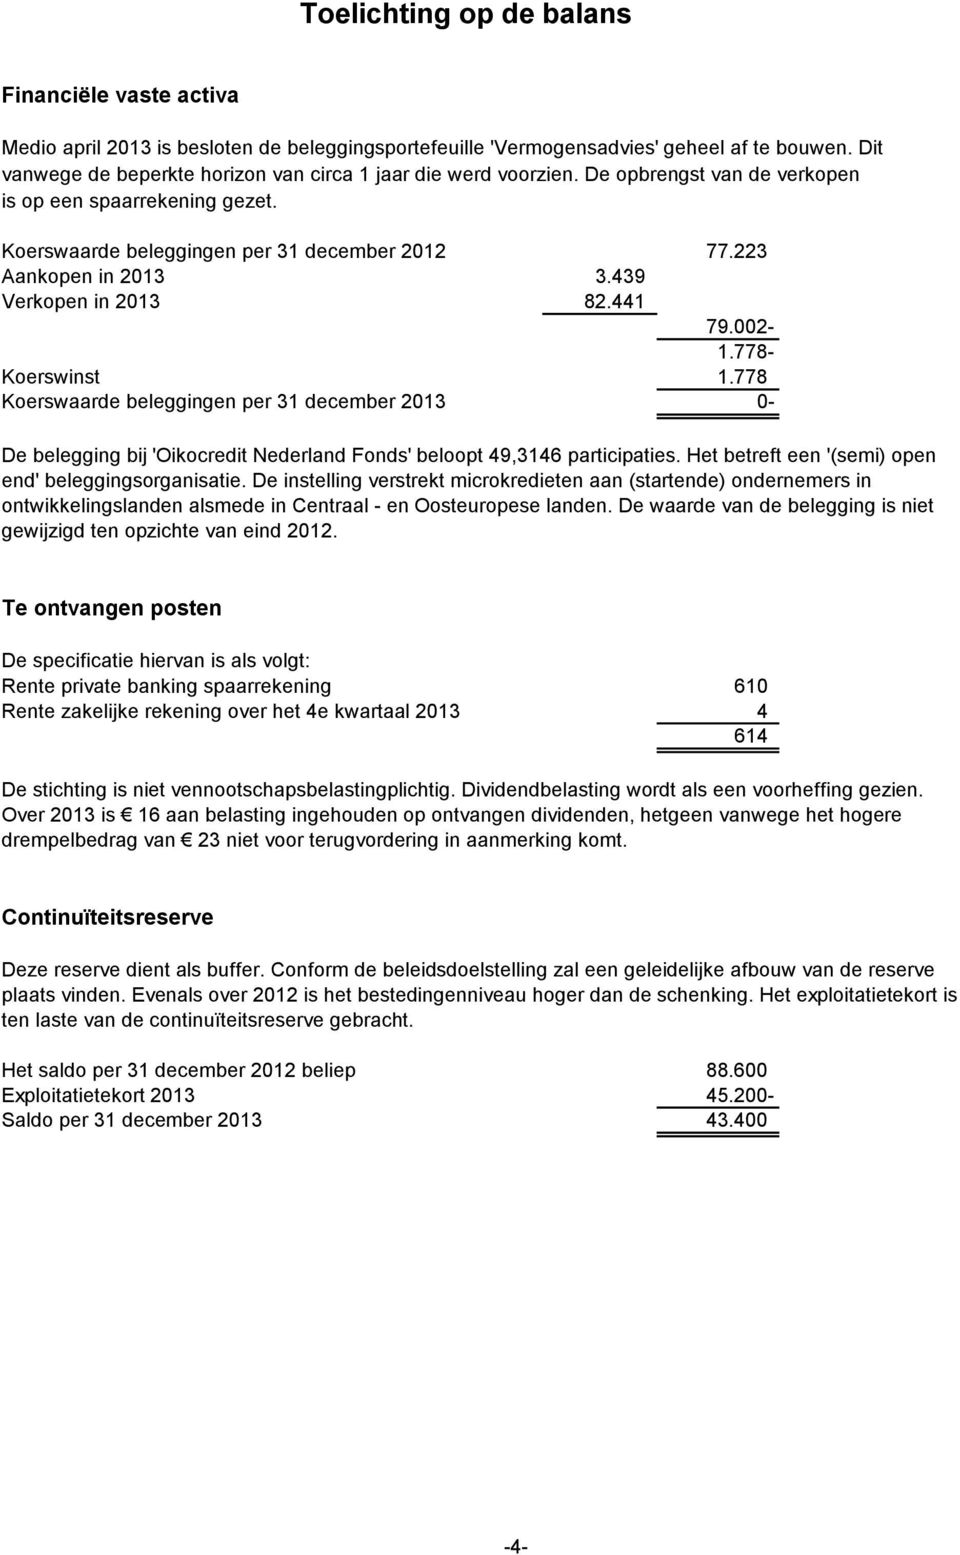 439 Verkopen in 2013 82.441 79.002-1.778- Koerswinst 1.778 Koerswaarde beleggingen per 31 december 2013 0- De belegging bij 'Oikocredit Nederland Fonds' beloopt 49,3146 participaties.